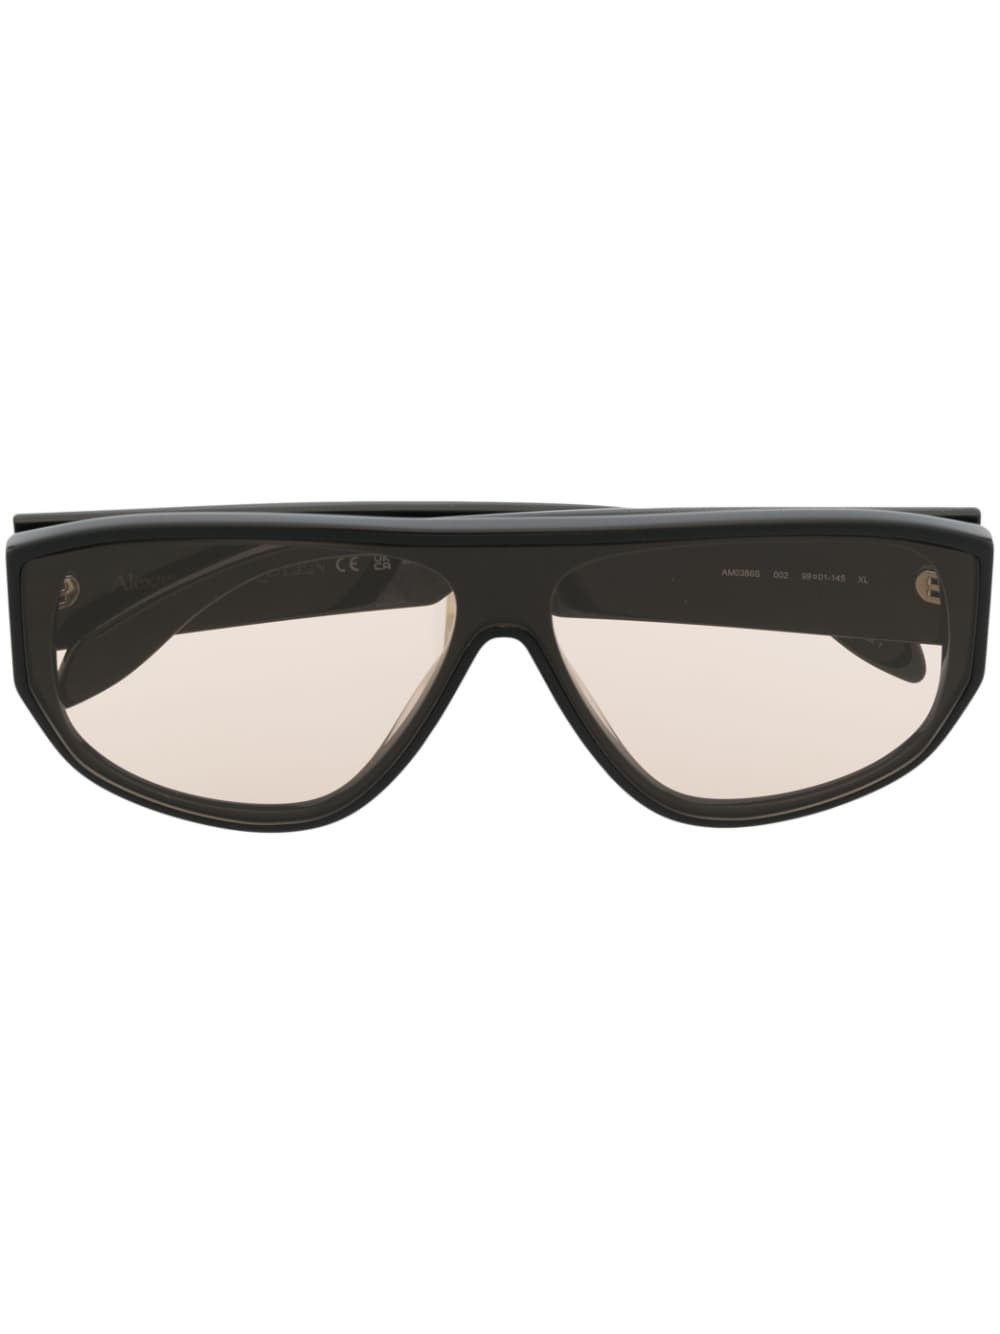 Alexander Mcqueen Sunglasses In Black  